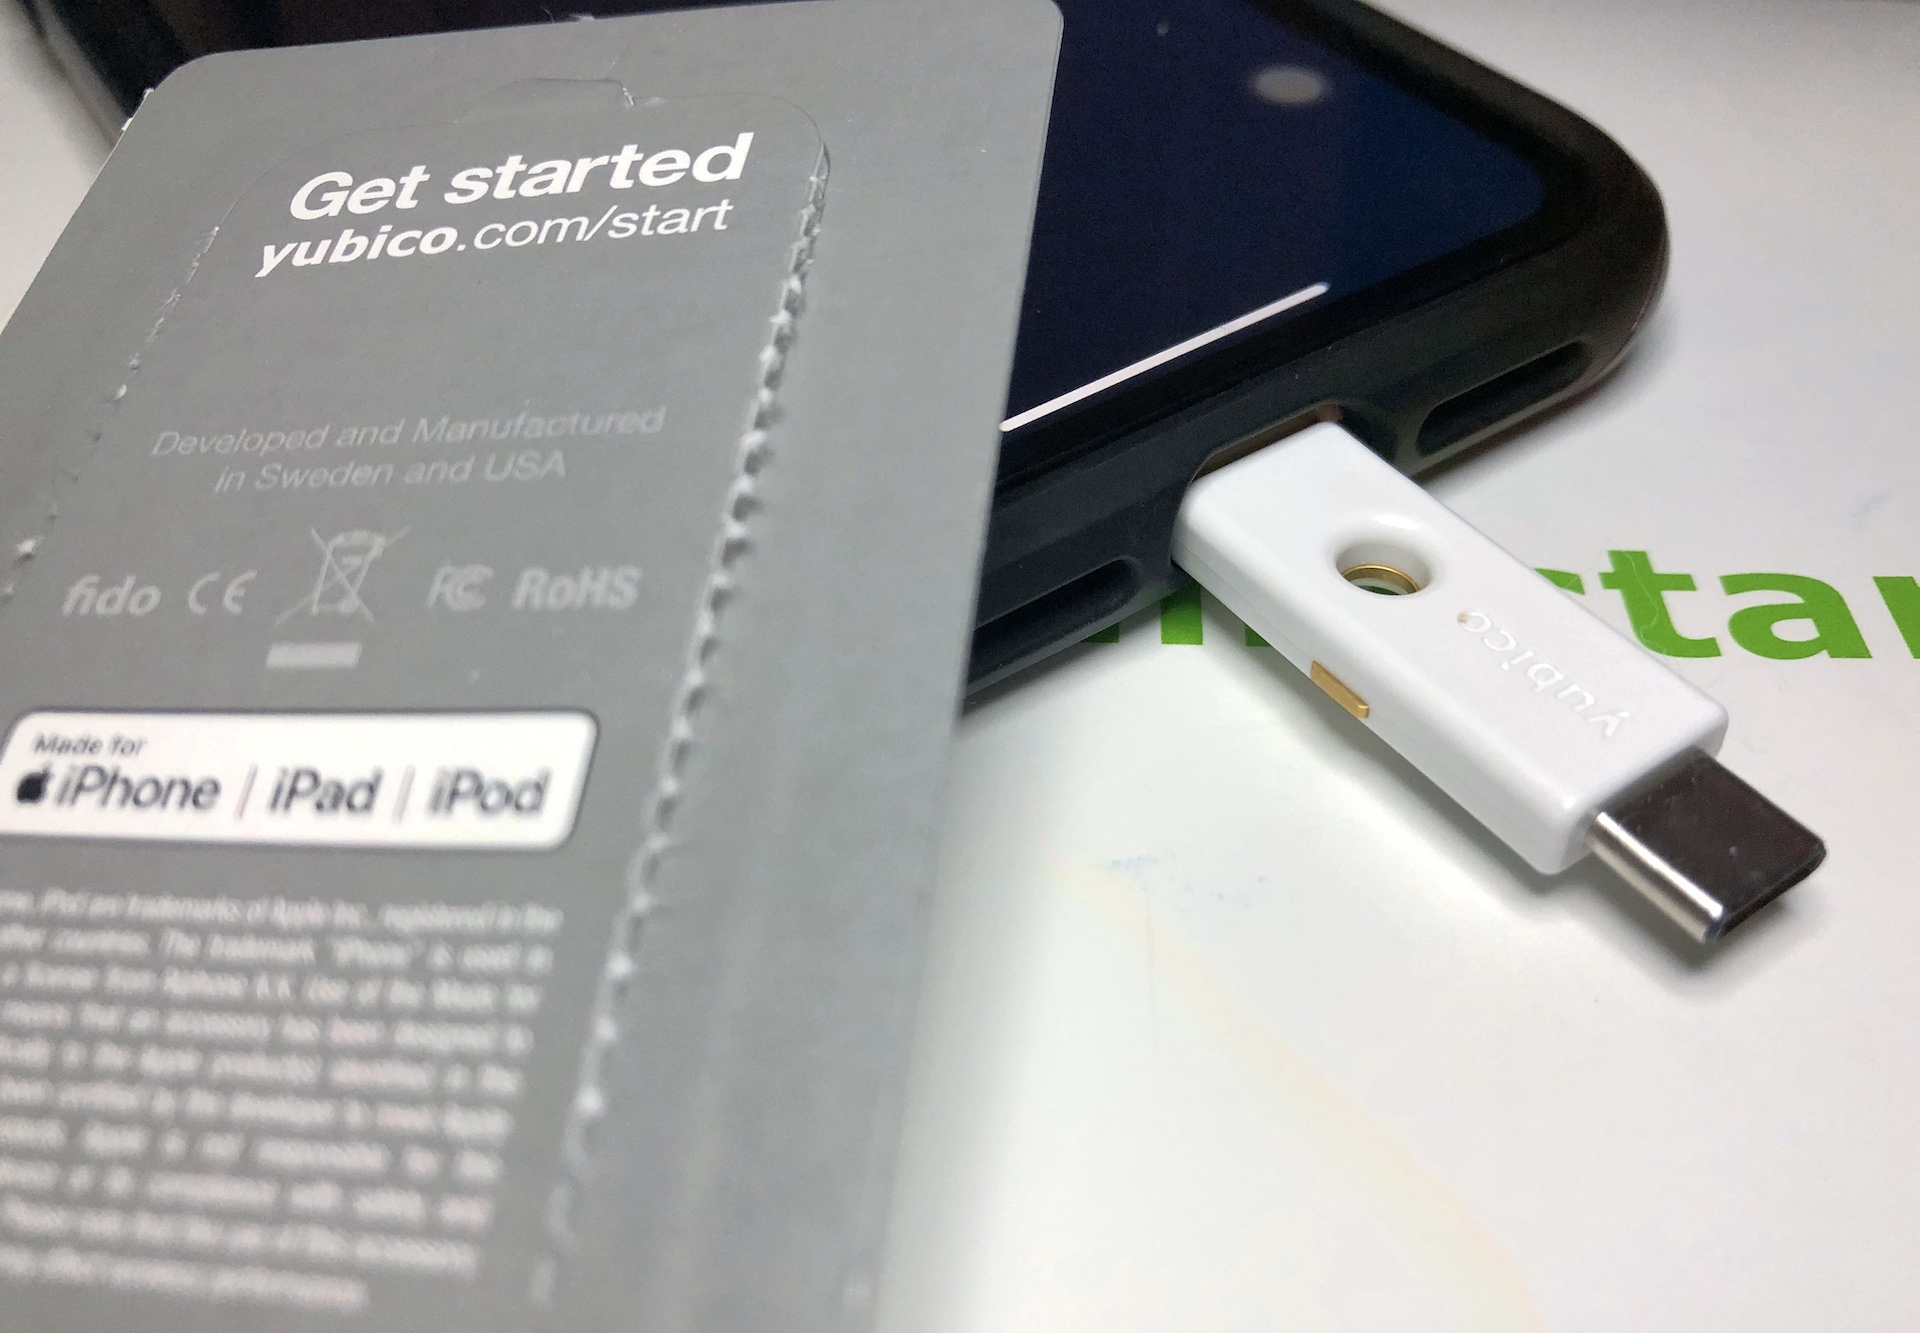 USB-CとLightningコネクタを備えた2段階認証用セキュリティキー「YubiKey 5Ci」レビュー。 | AAPL Ch.